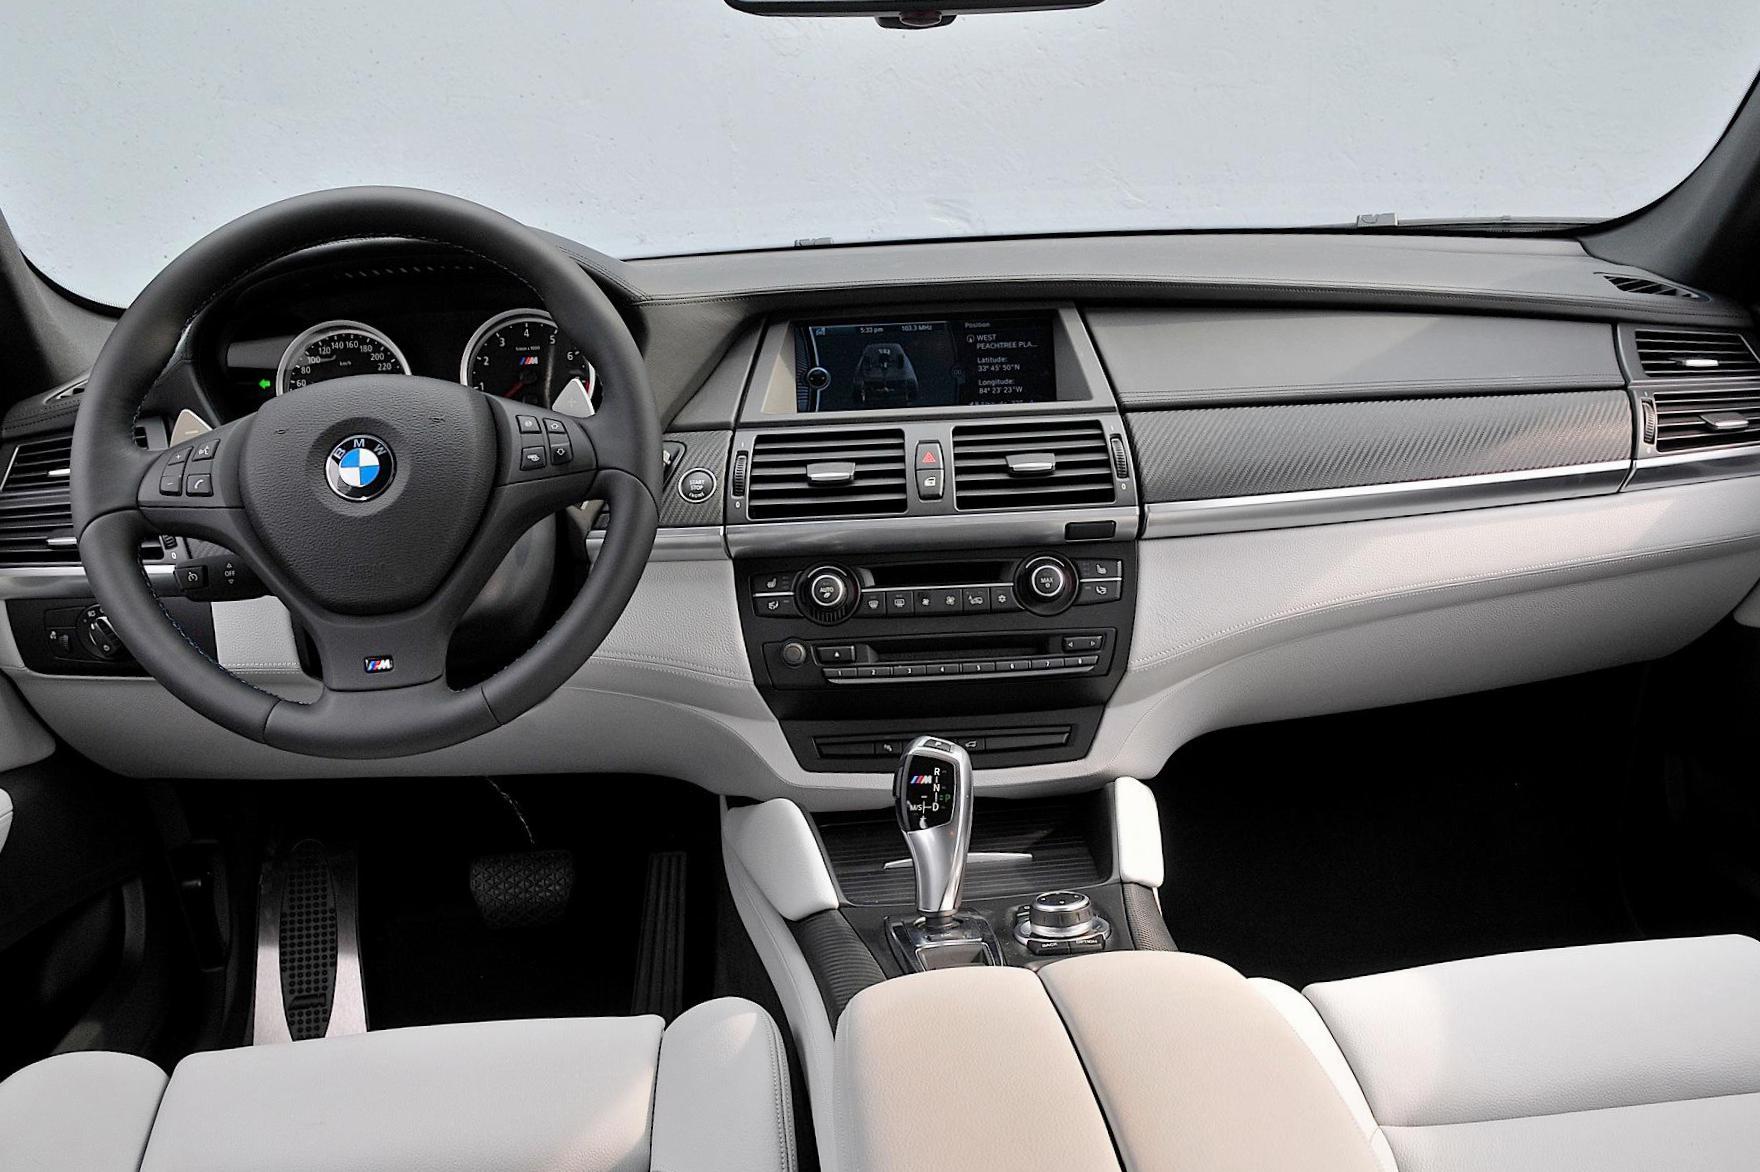 X6 M (E71) BMW review minivan